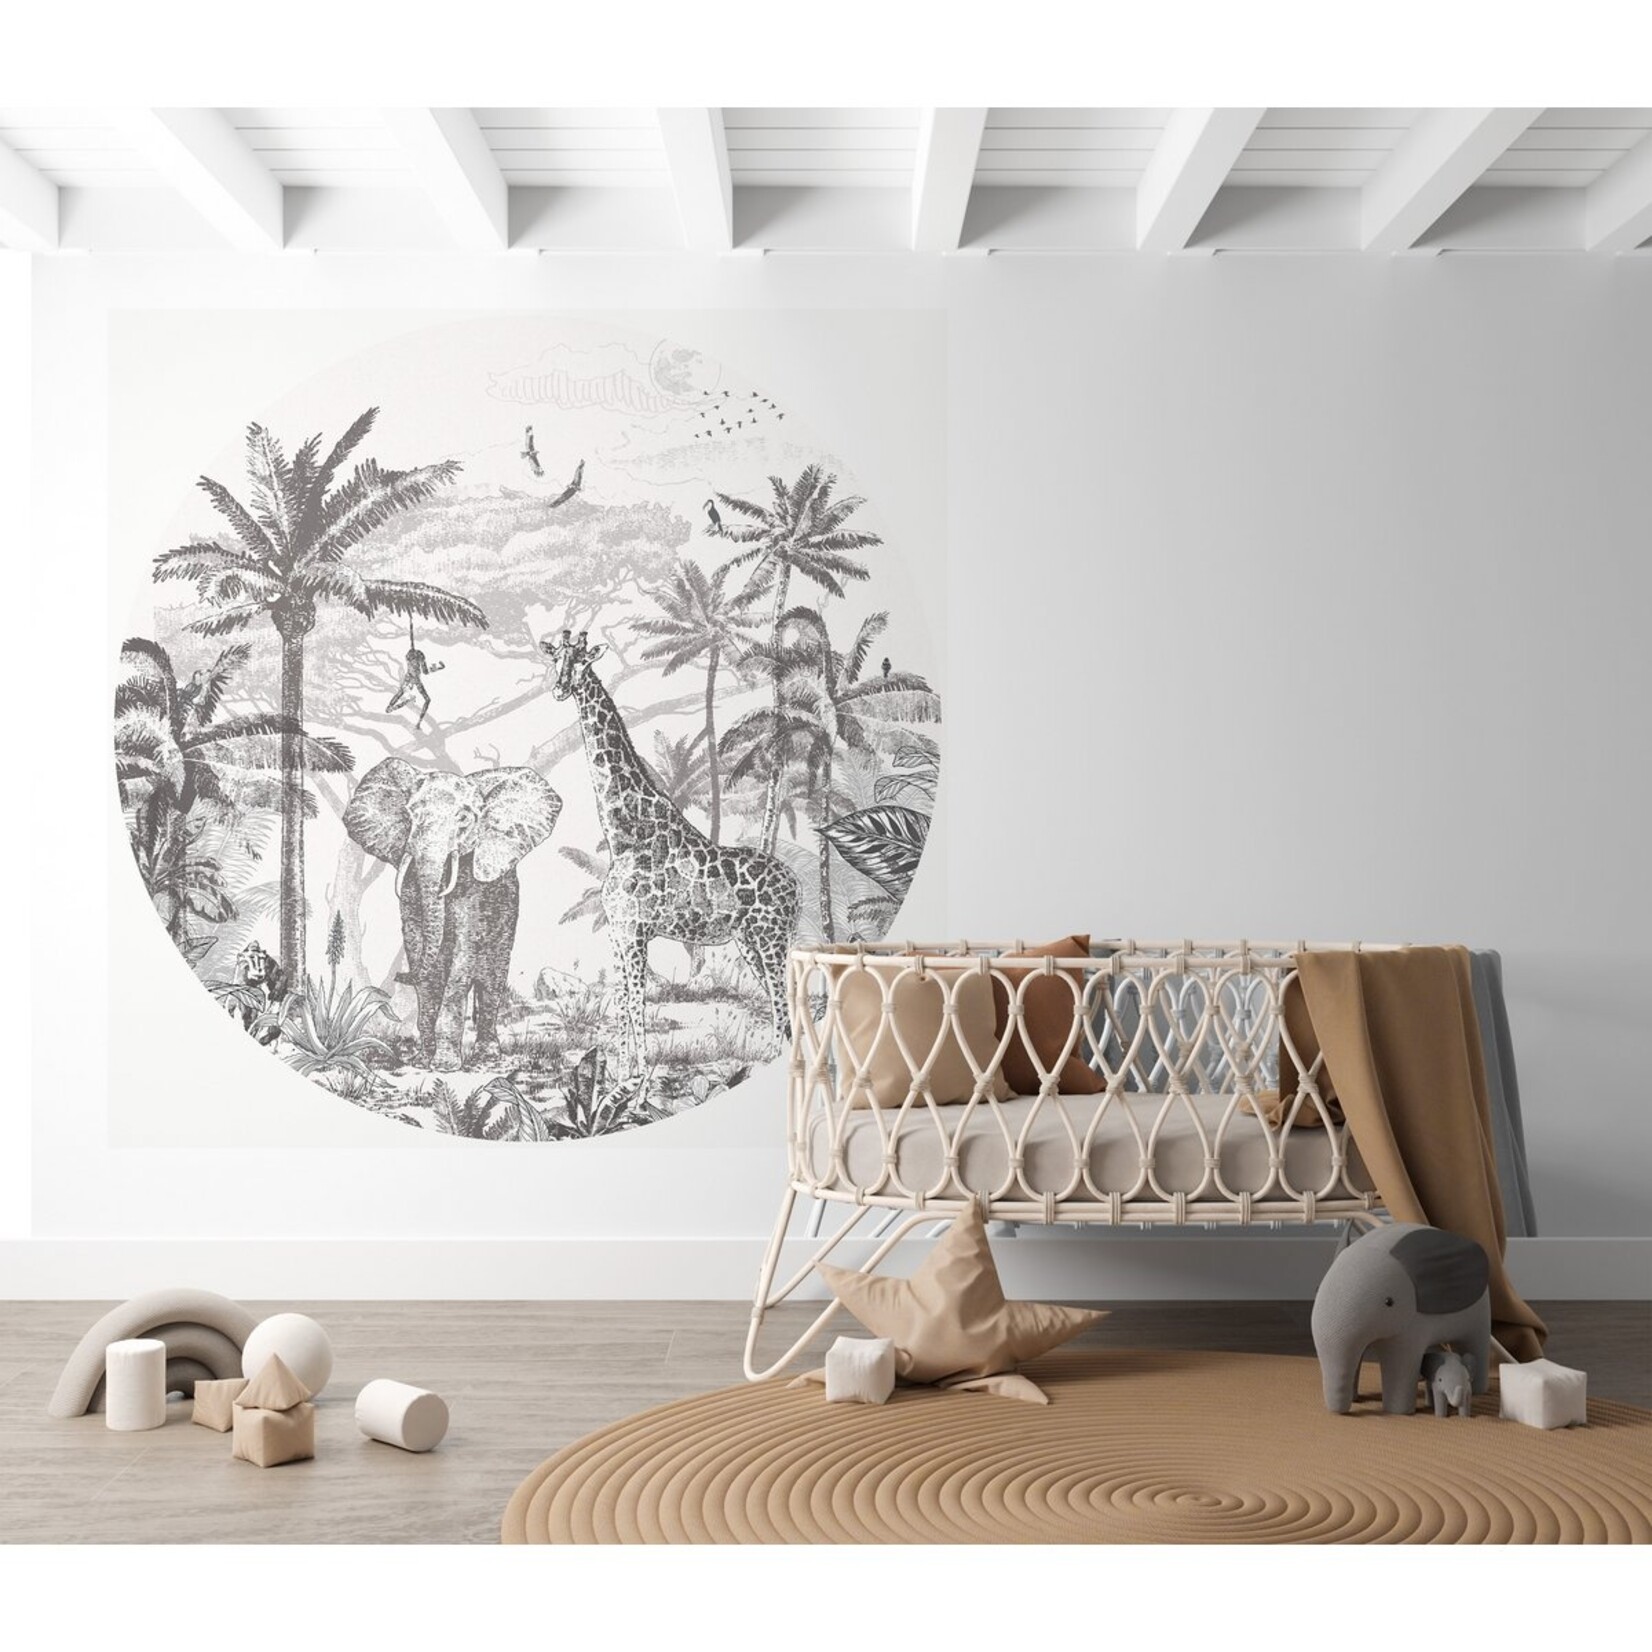 ELLIE Studio Zelfklevende behangcirkel met Jungle thema | zwart wit